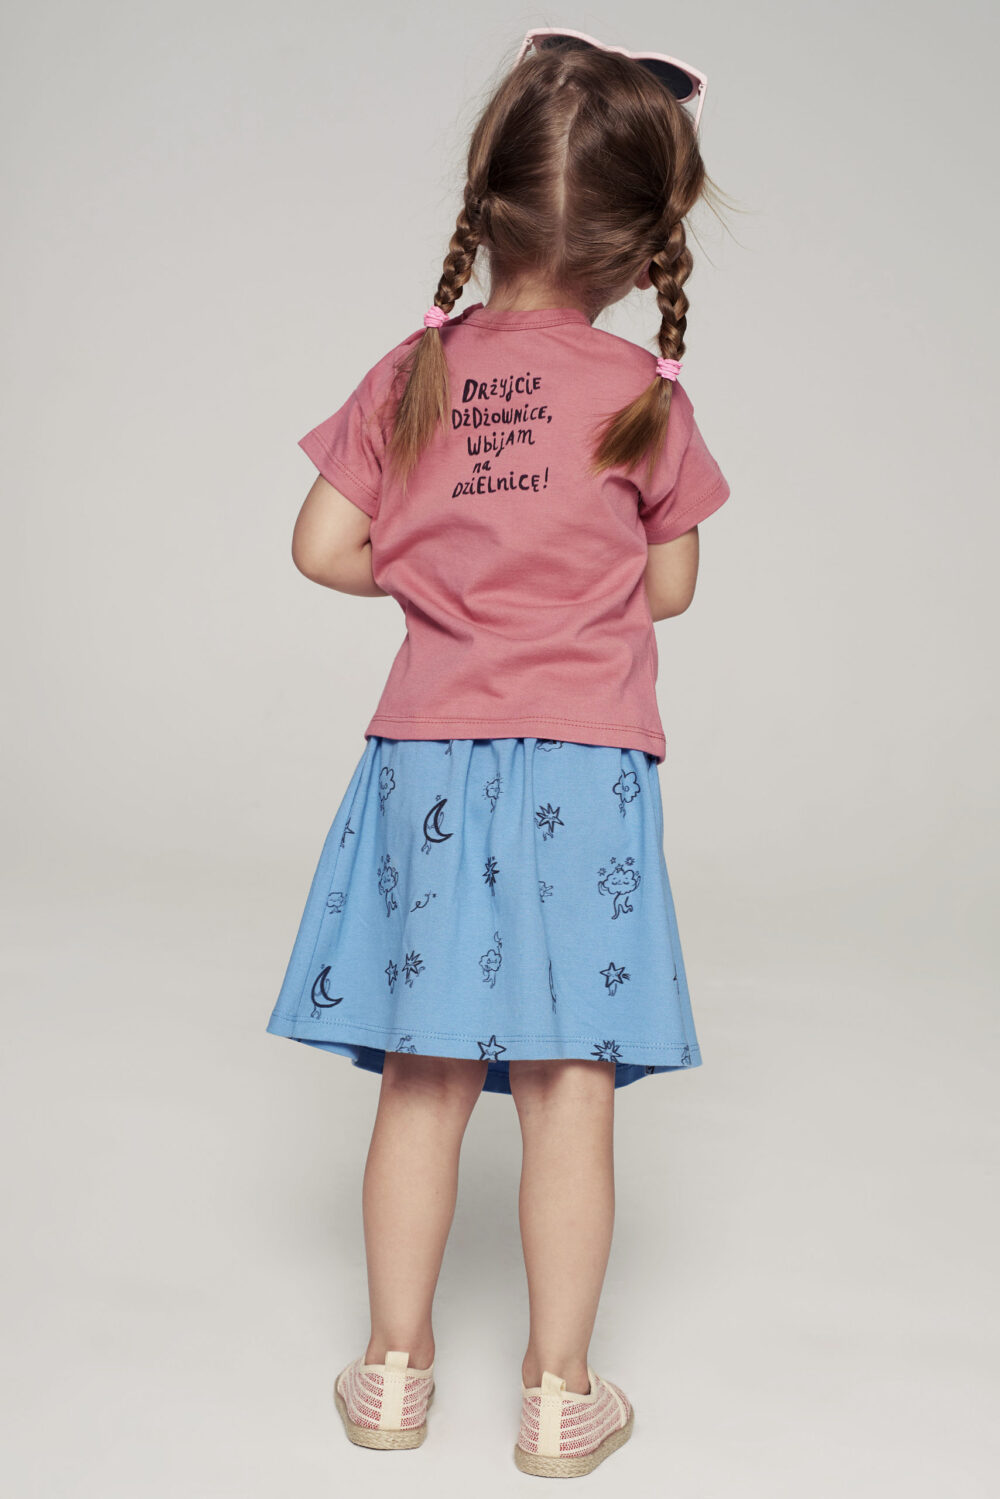 T shirt dla dziecka rozowy Kret tyl scaled 1